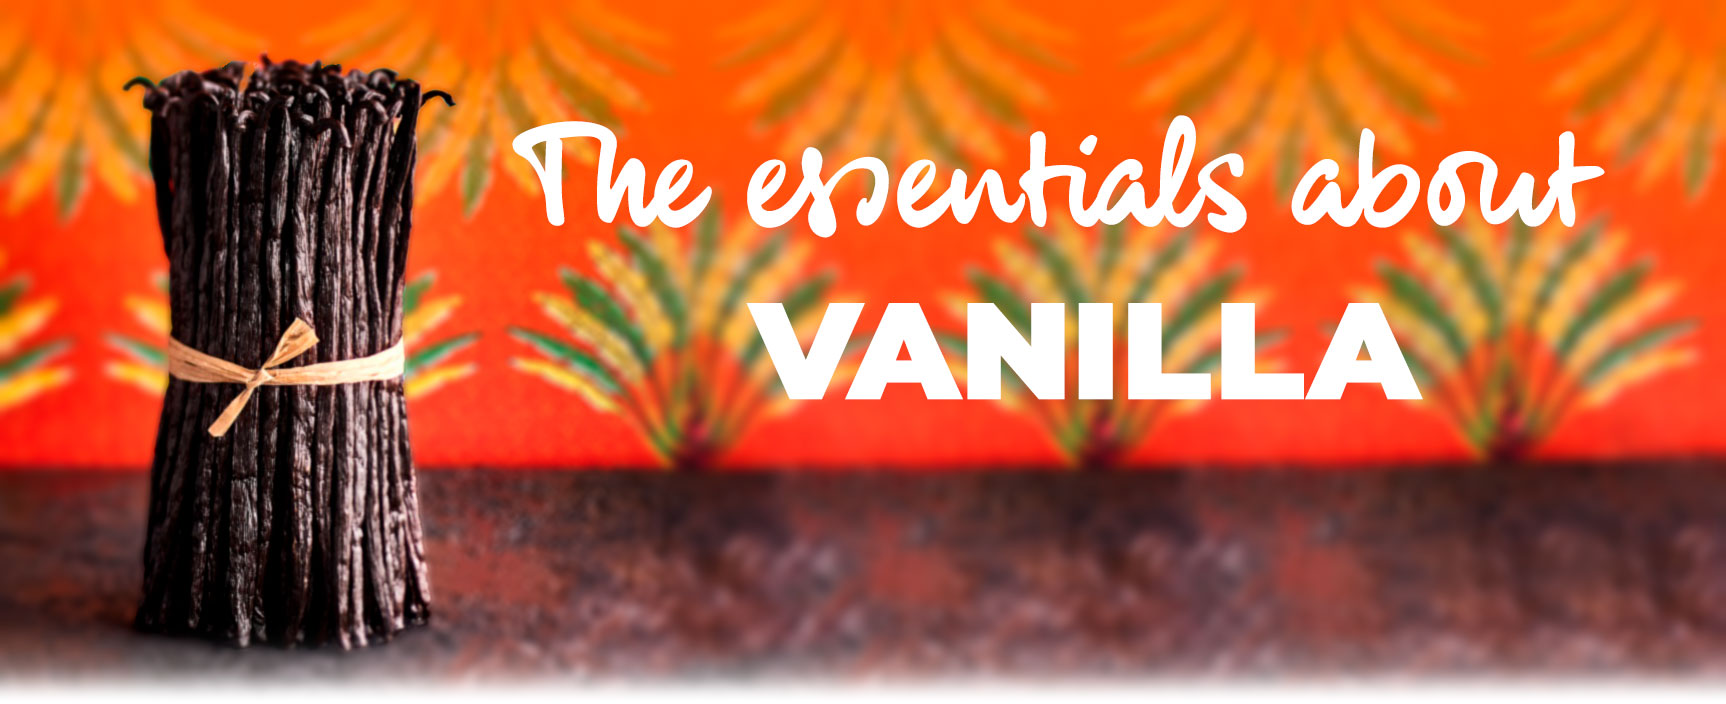 The essentials about Vanilla